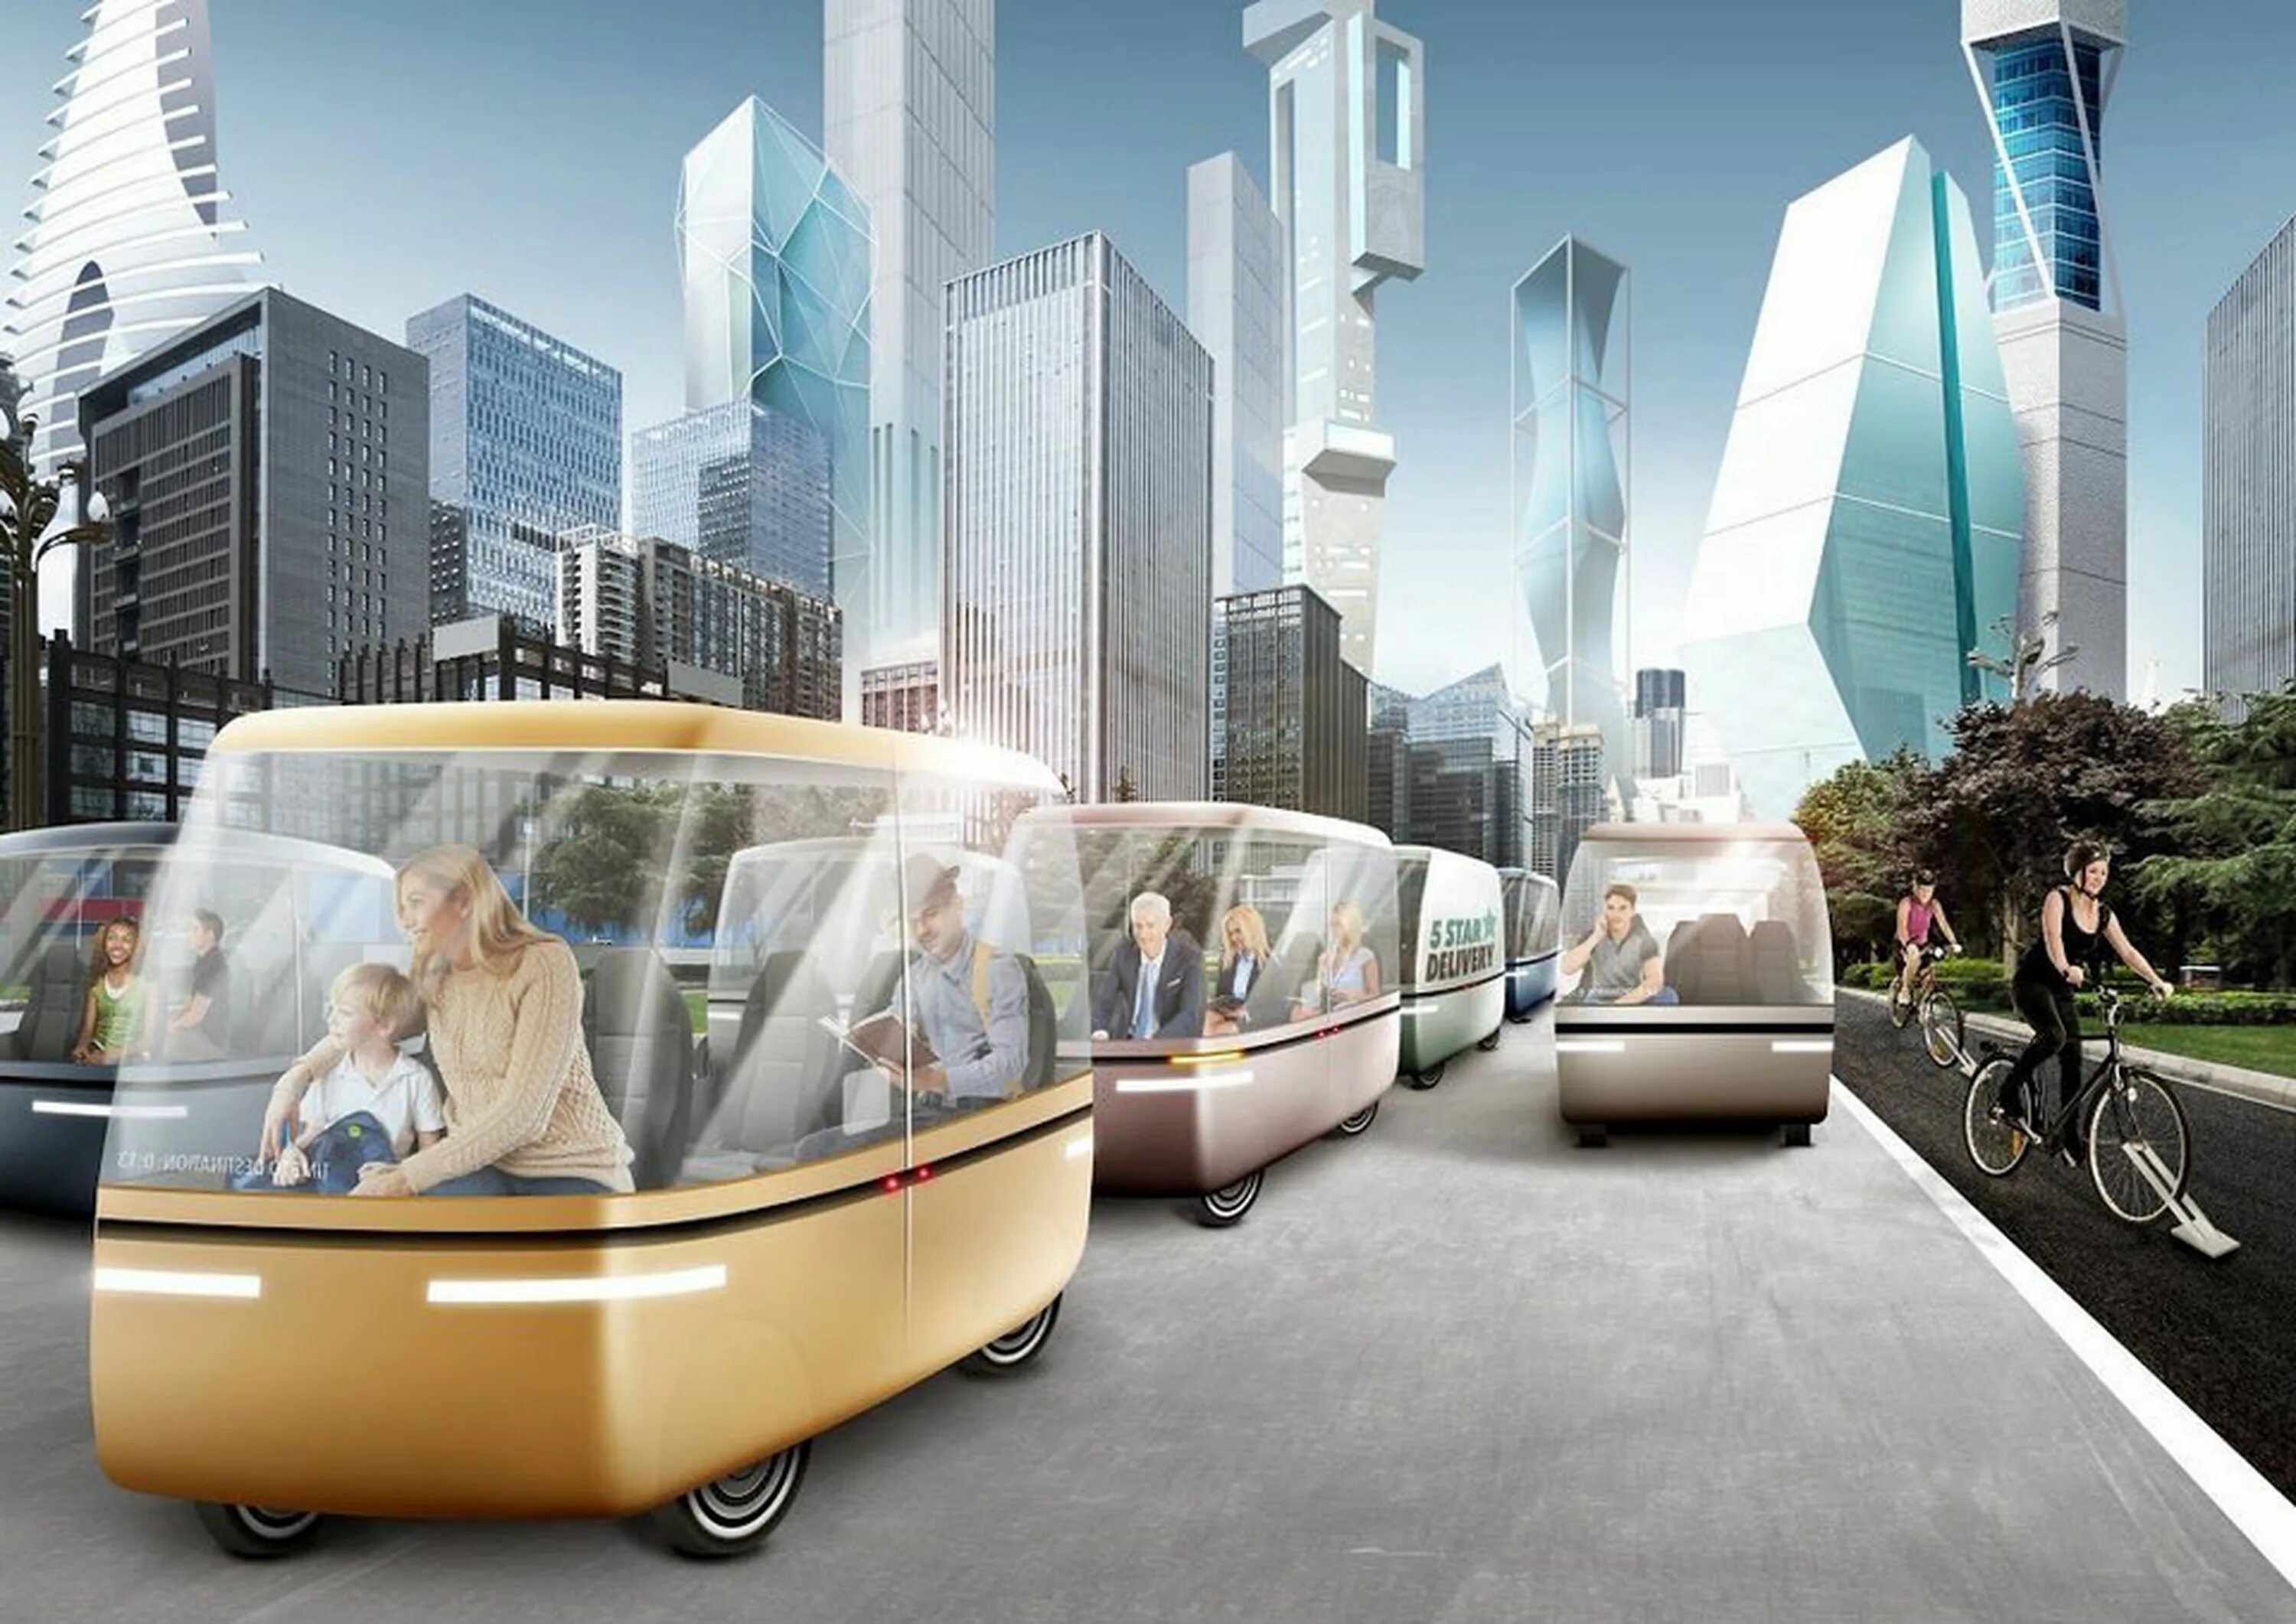 Германия 2025 год. Транспорт будущего. Город будущего транспорт. Картинки будущего. Инновации в транспорте.